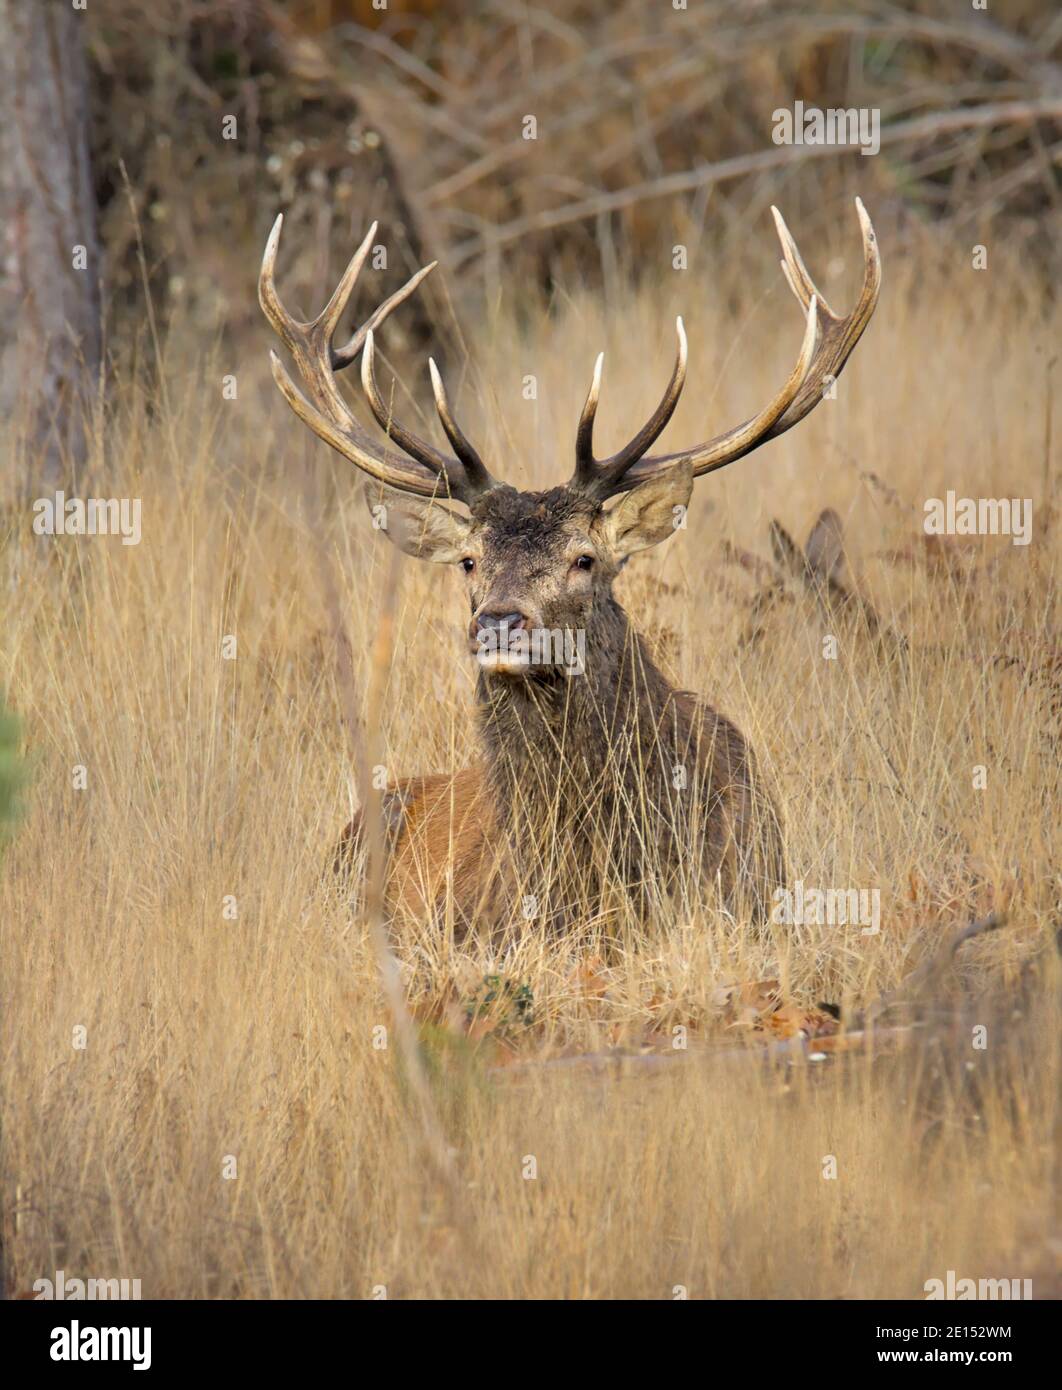 Vieux cerf-Rouge mâle Stag, Cervus elaphus, avec des Antlers assis au milieu de l'herbe morte regardant la caméra. Prise New Forest Royaume-Uni Banque D'Images